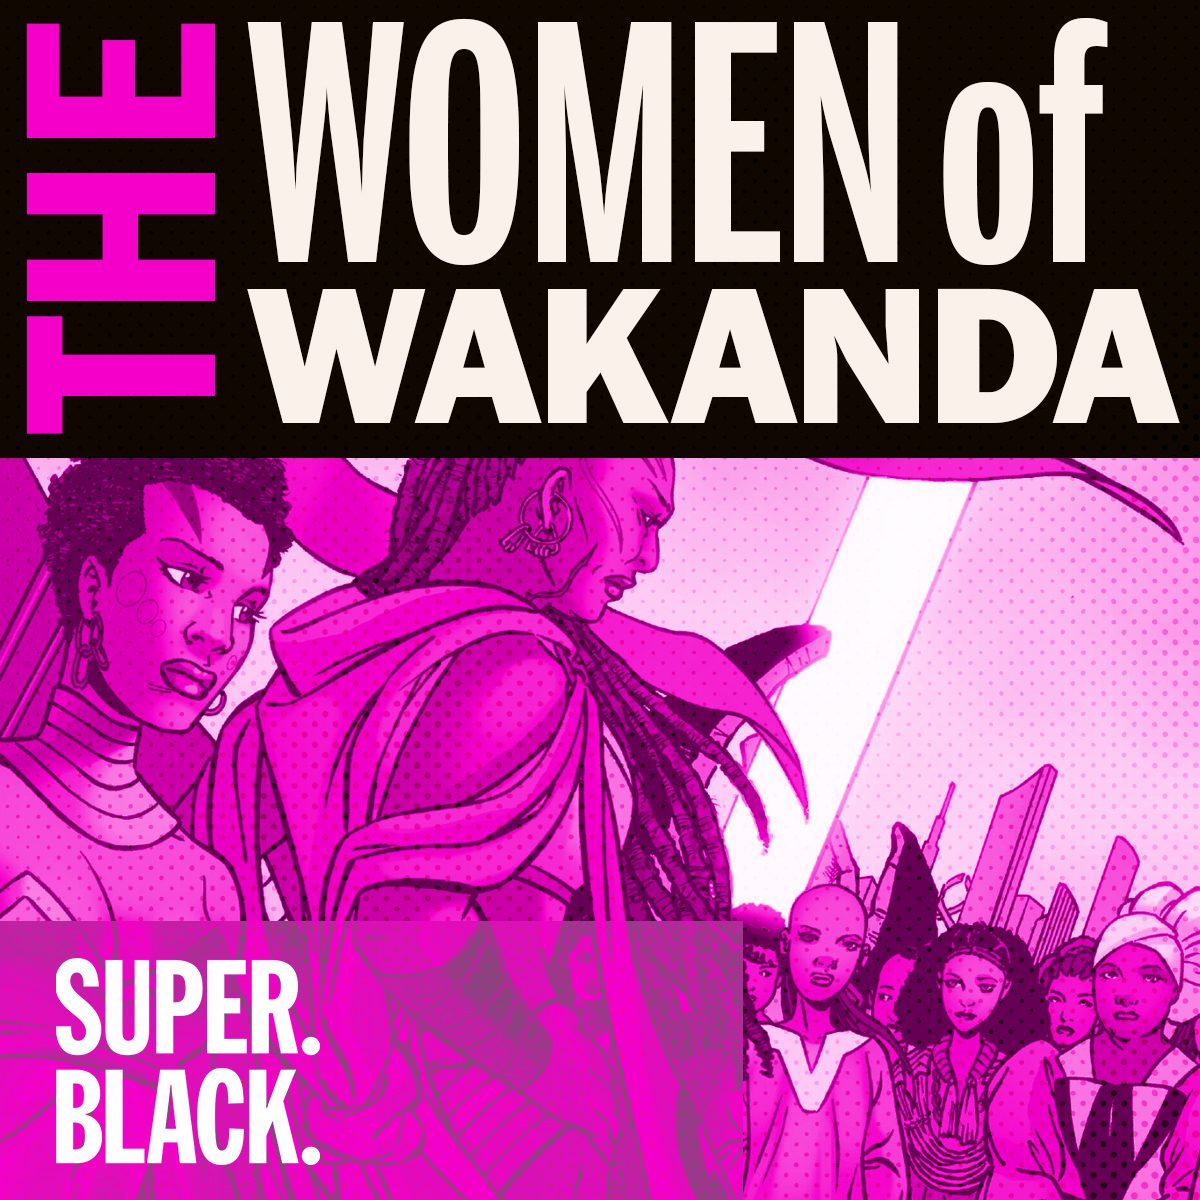 The Women of Wakanda - Super. Black.